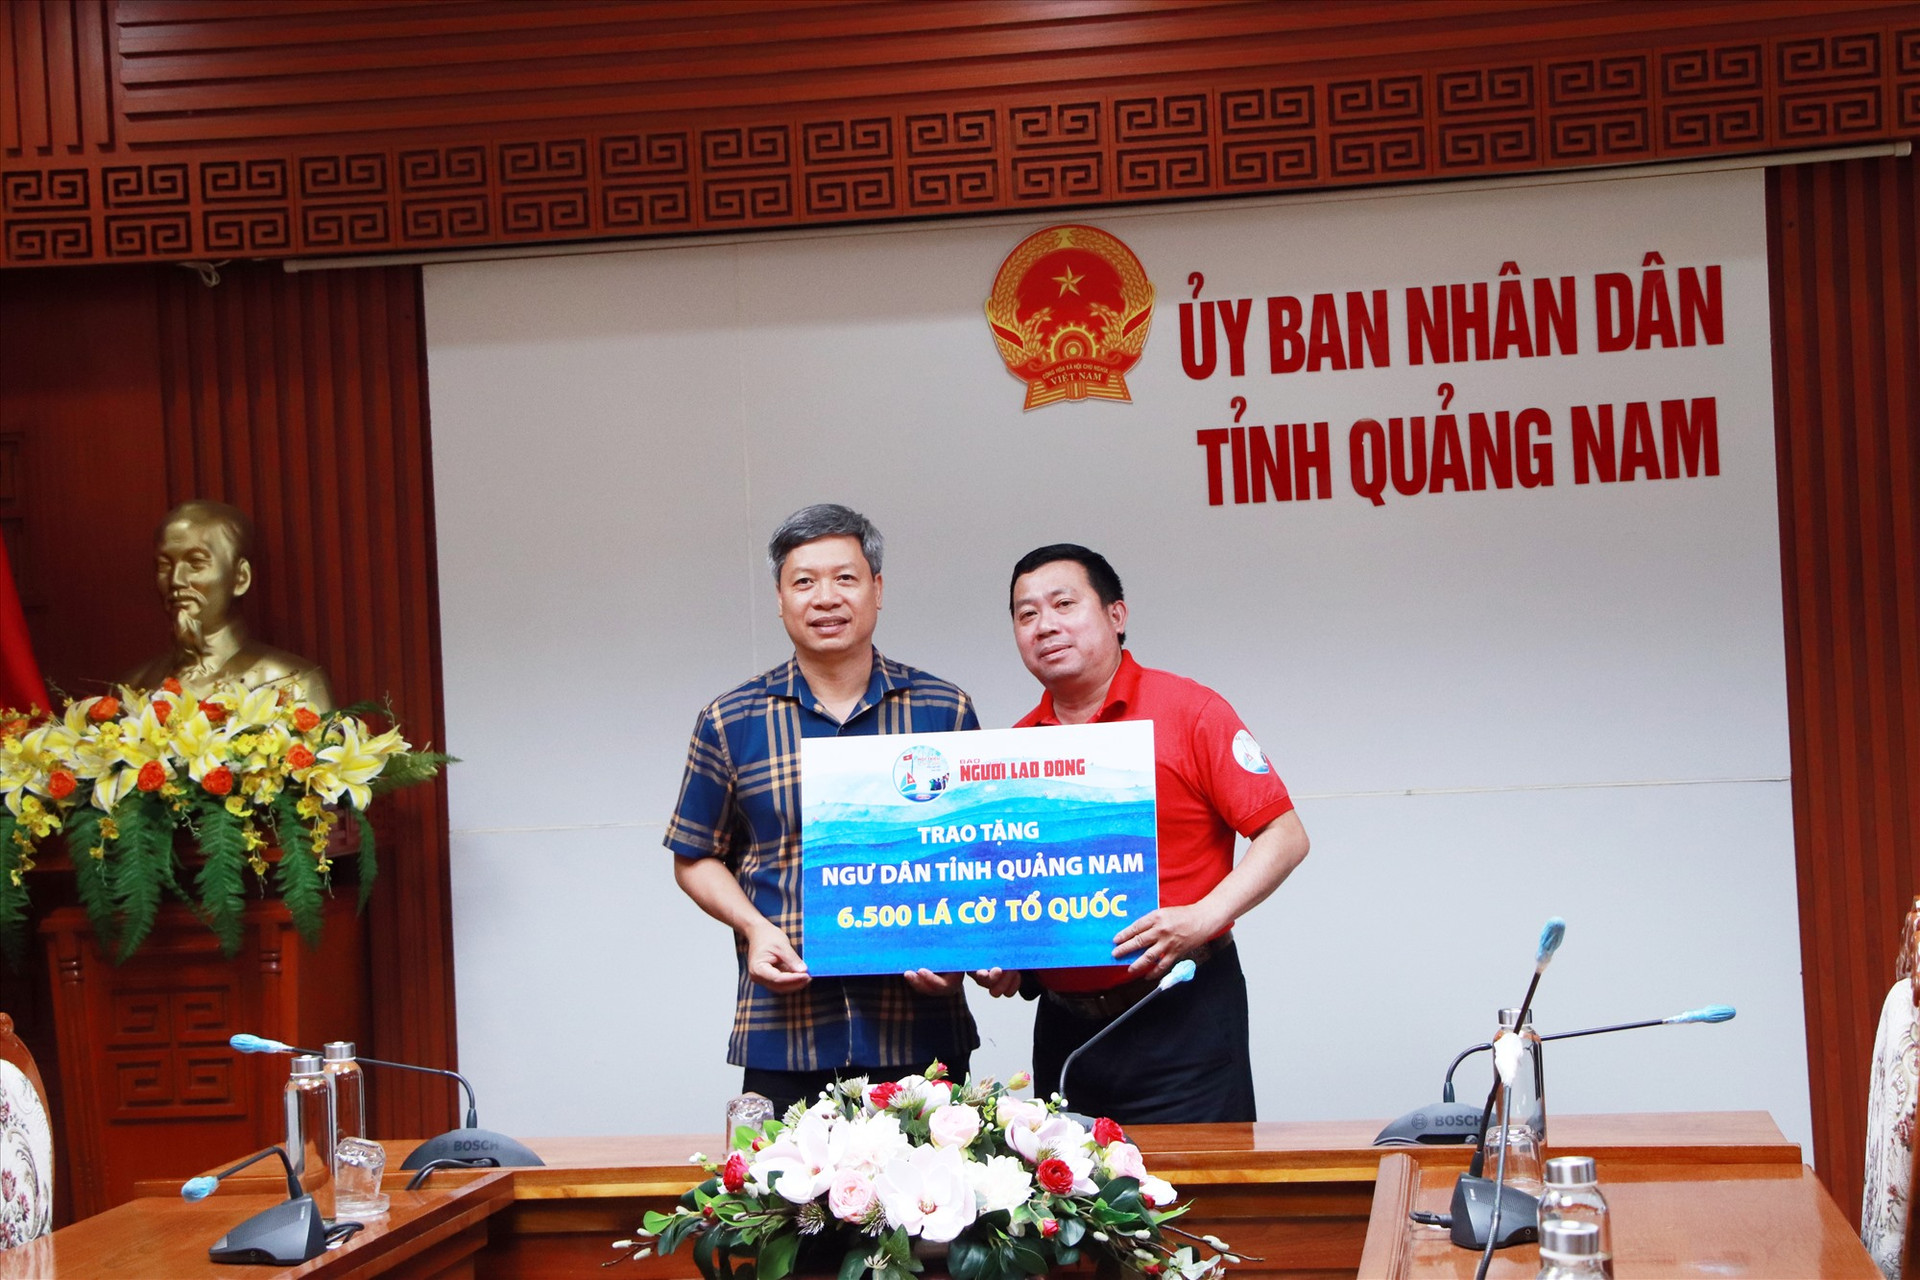 Ngày 29.3.2022, Phó Chủ tịch UBND tỉnh Hồ Quang Bửu đã tiếp nhận 6.500 lá cờ Tổ quốc từ Báo Người Lao Động. Số cờ này đã được phân bổ về cho LĐLĐ tỉnh và các địa phương có biển trên địa bàn tỉnh để trao lại cho ngư dân ngay sau đó.